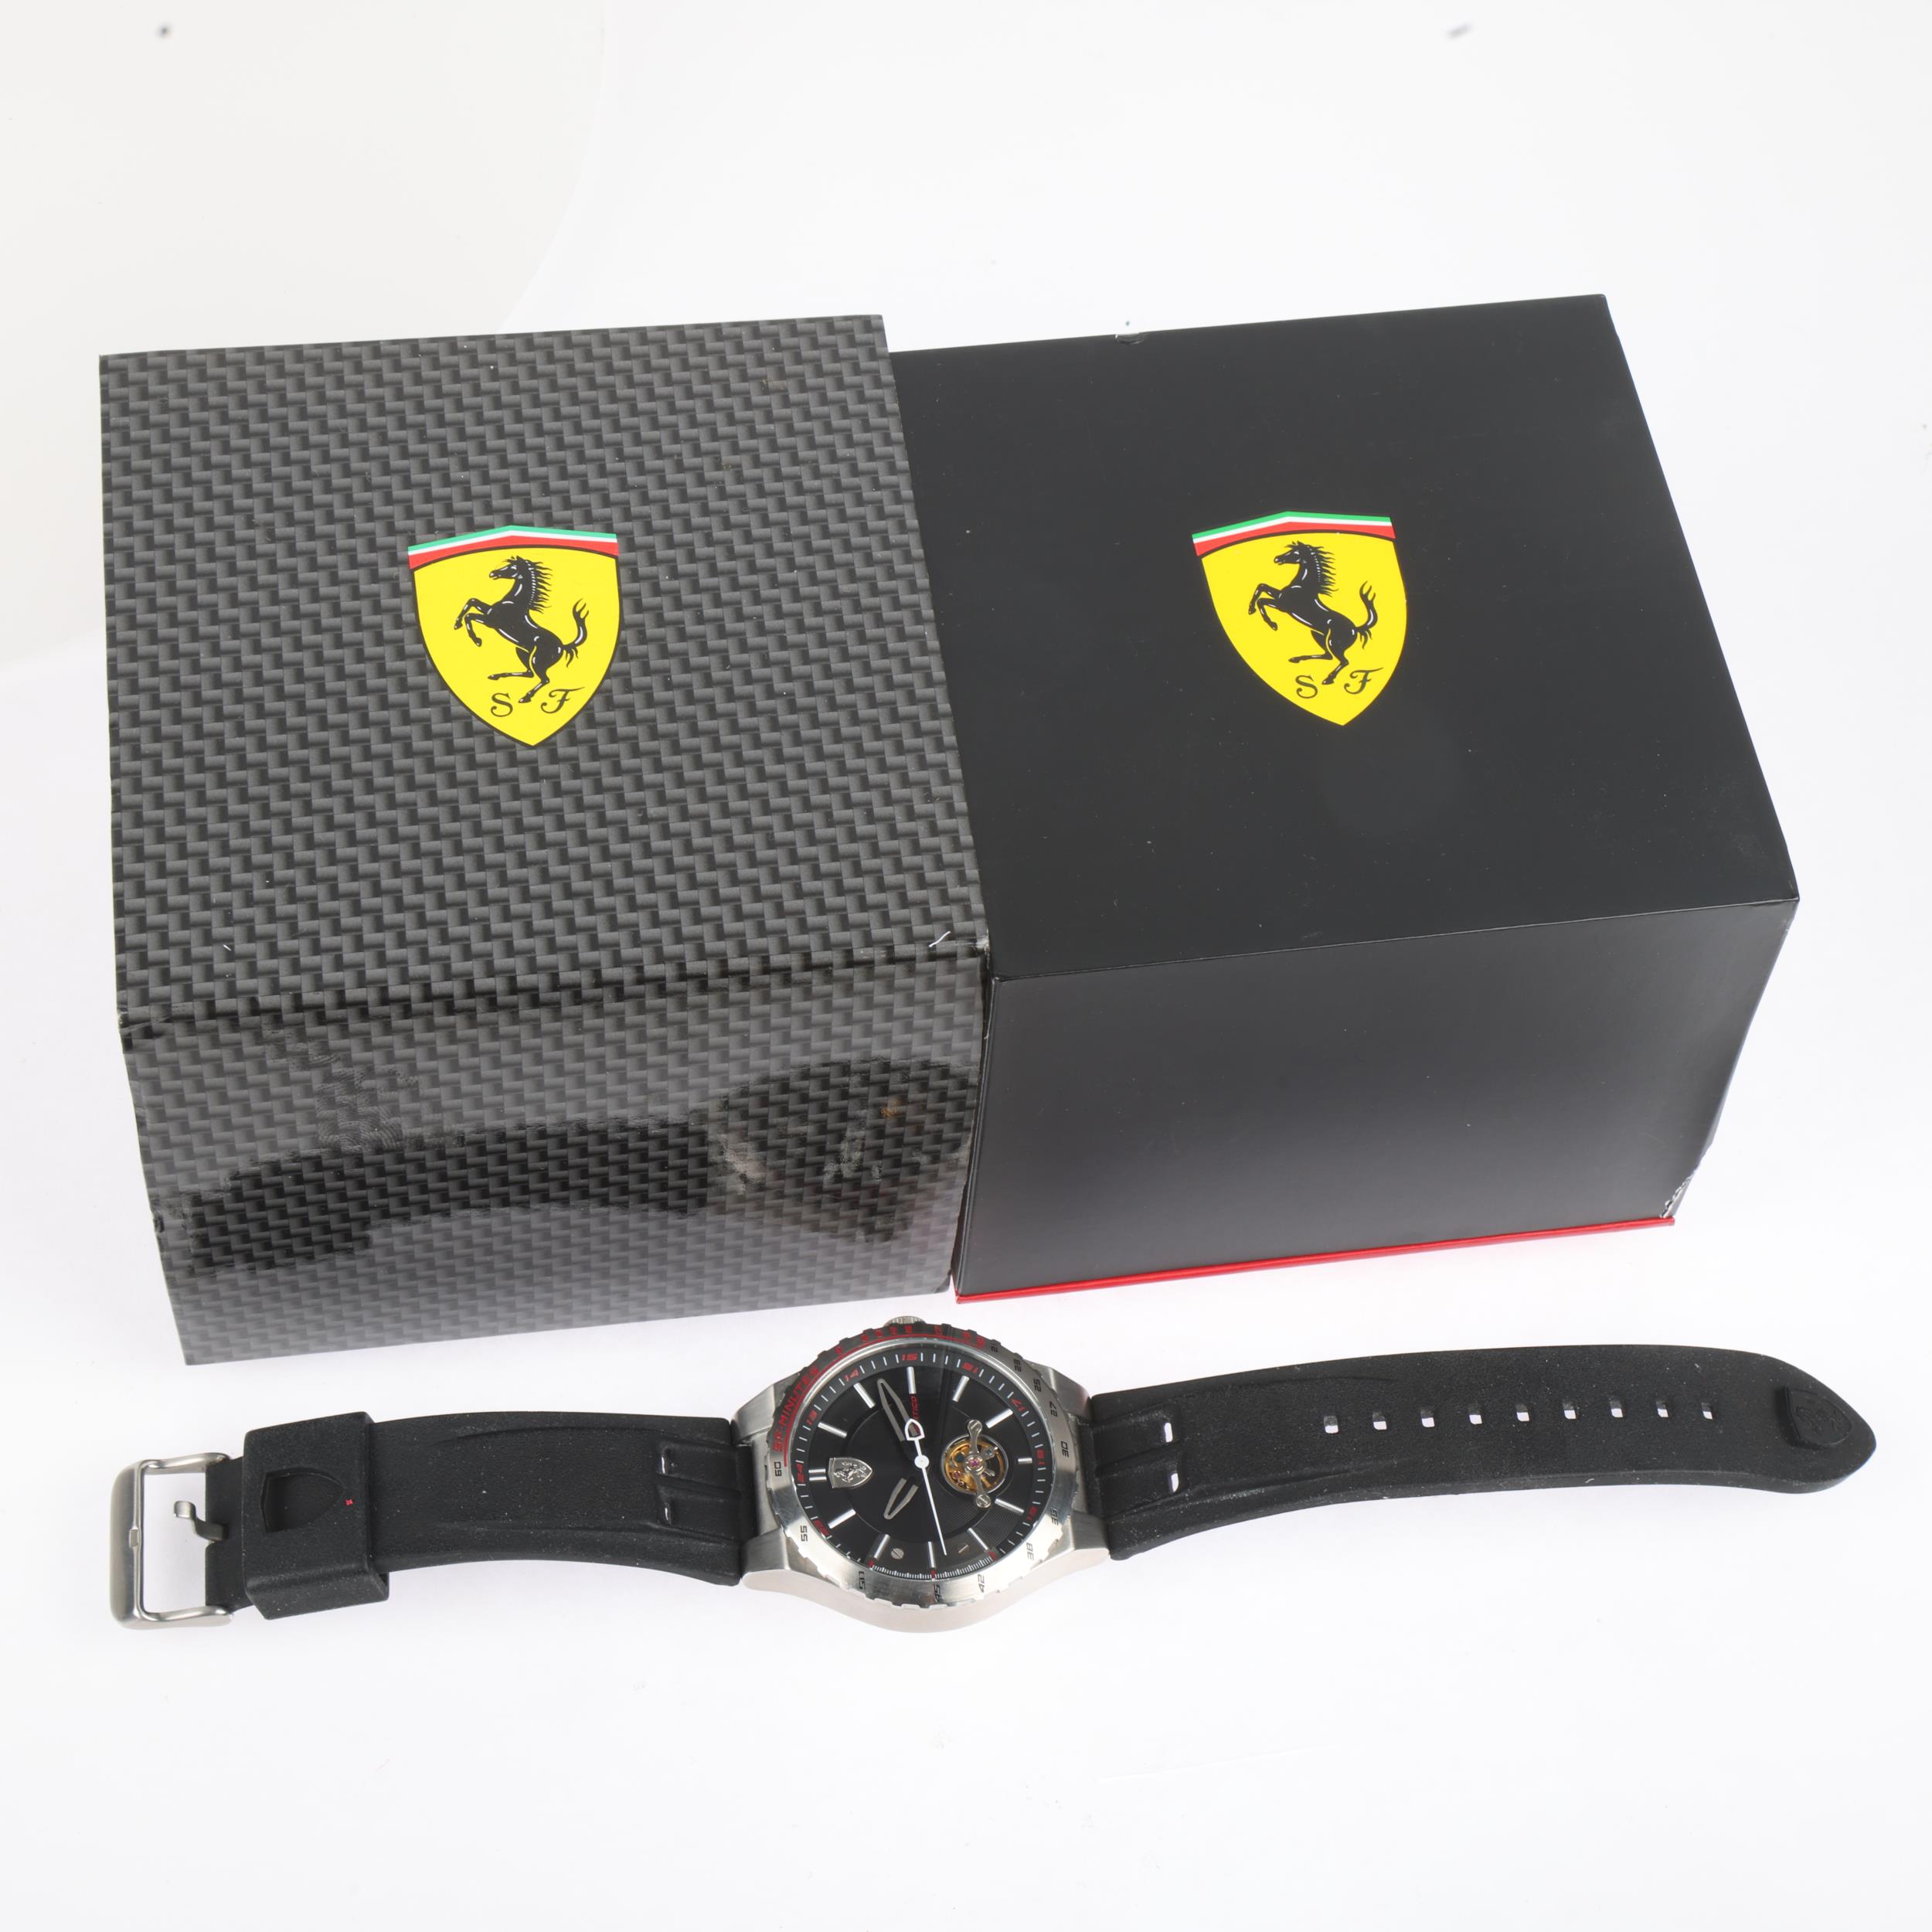 FERRARI - a stainless steel Scuderia Ferrari Speciale Evo automatic wristwatch, ref. SF.36.1.14. - Image 5 of 5